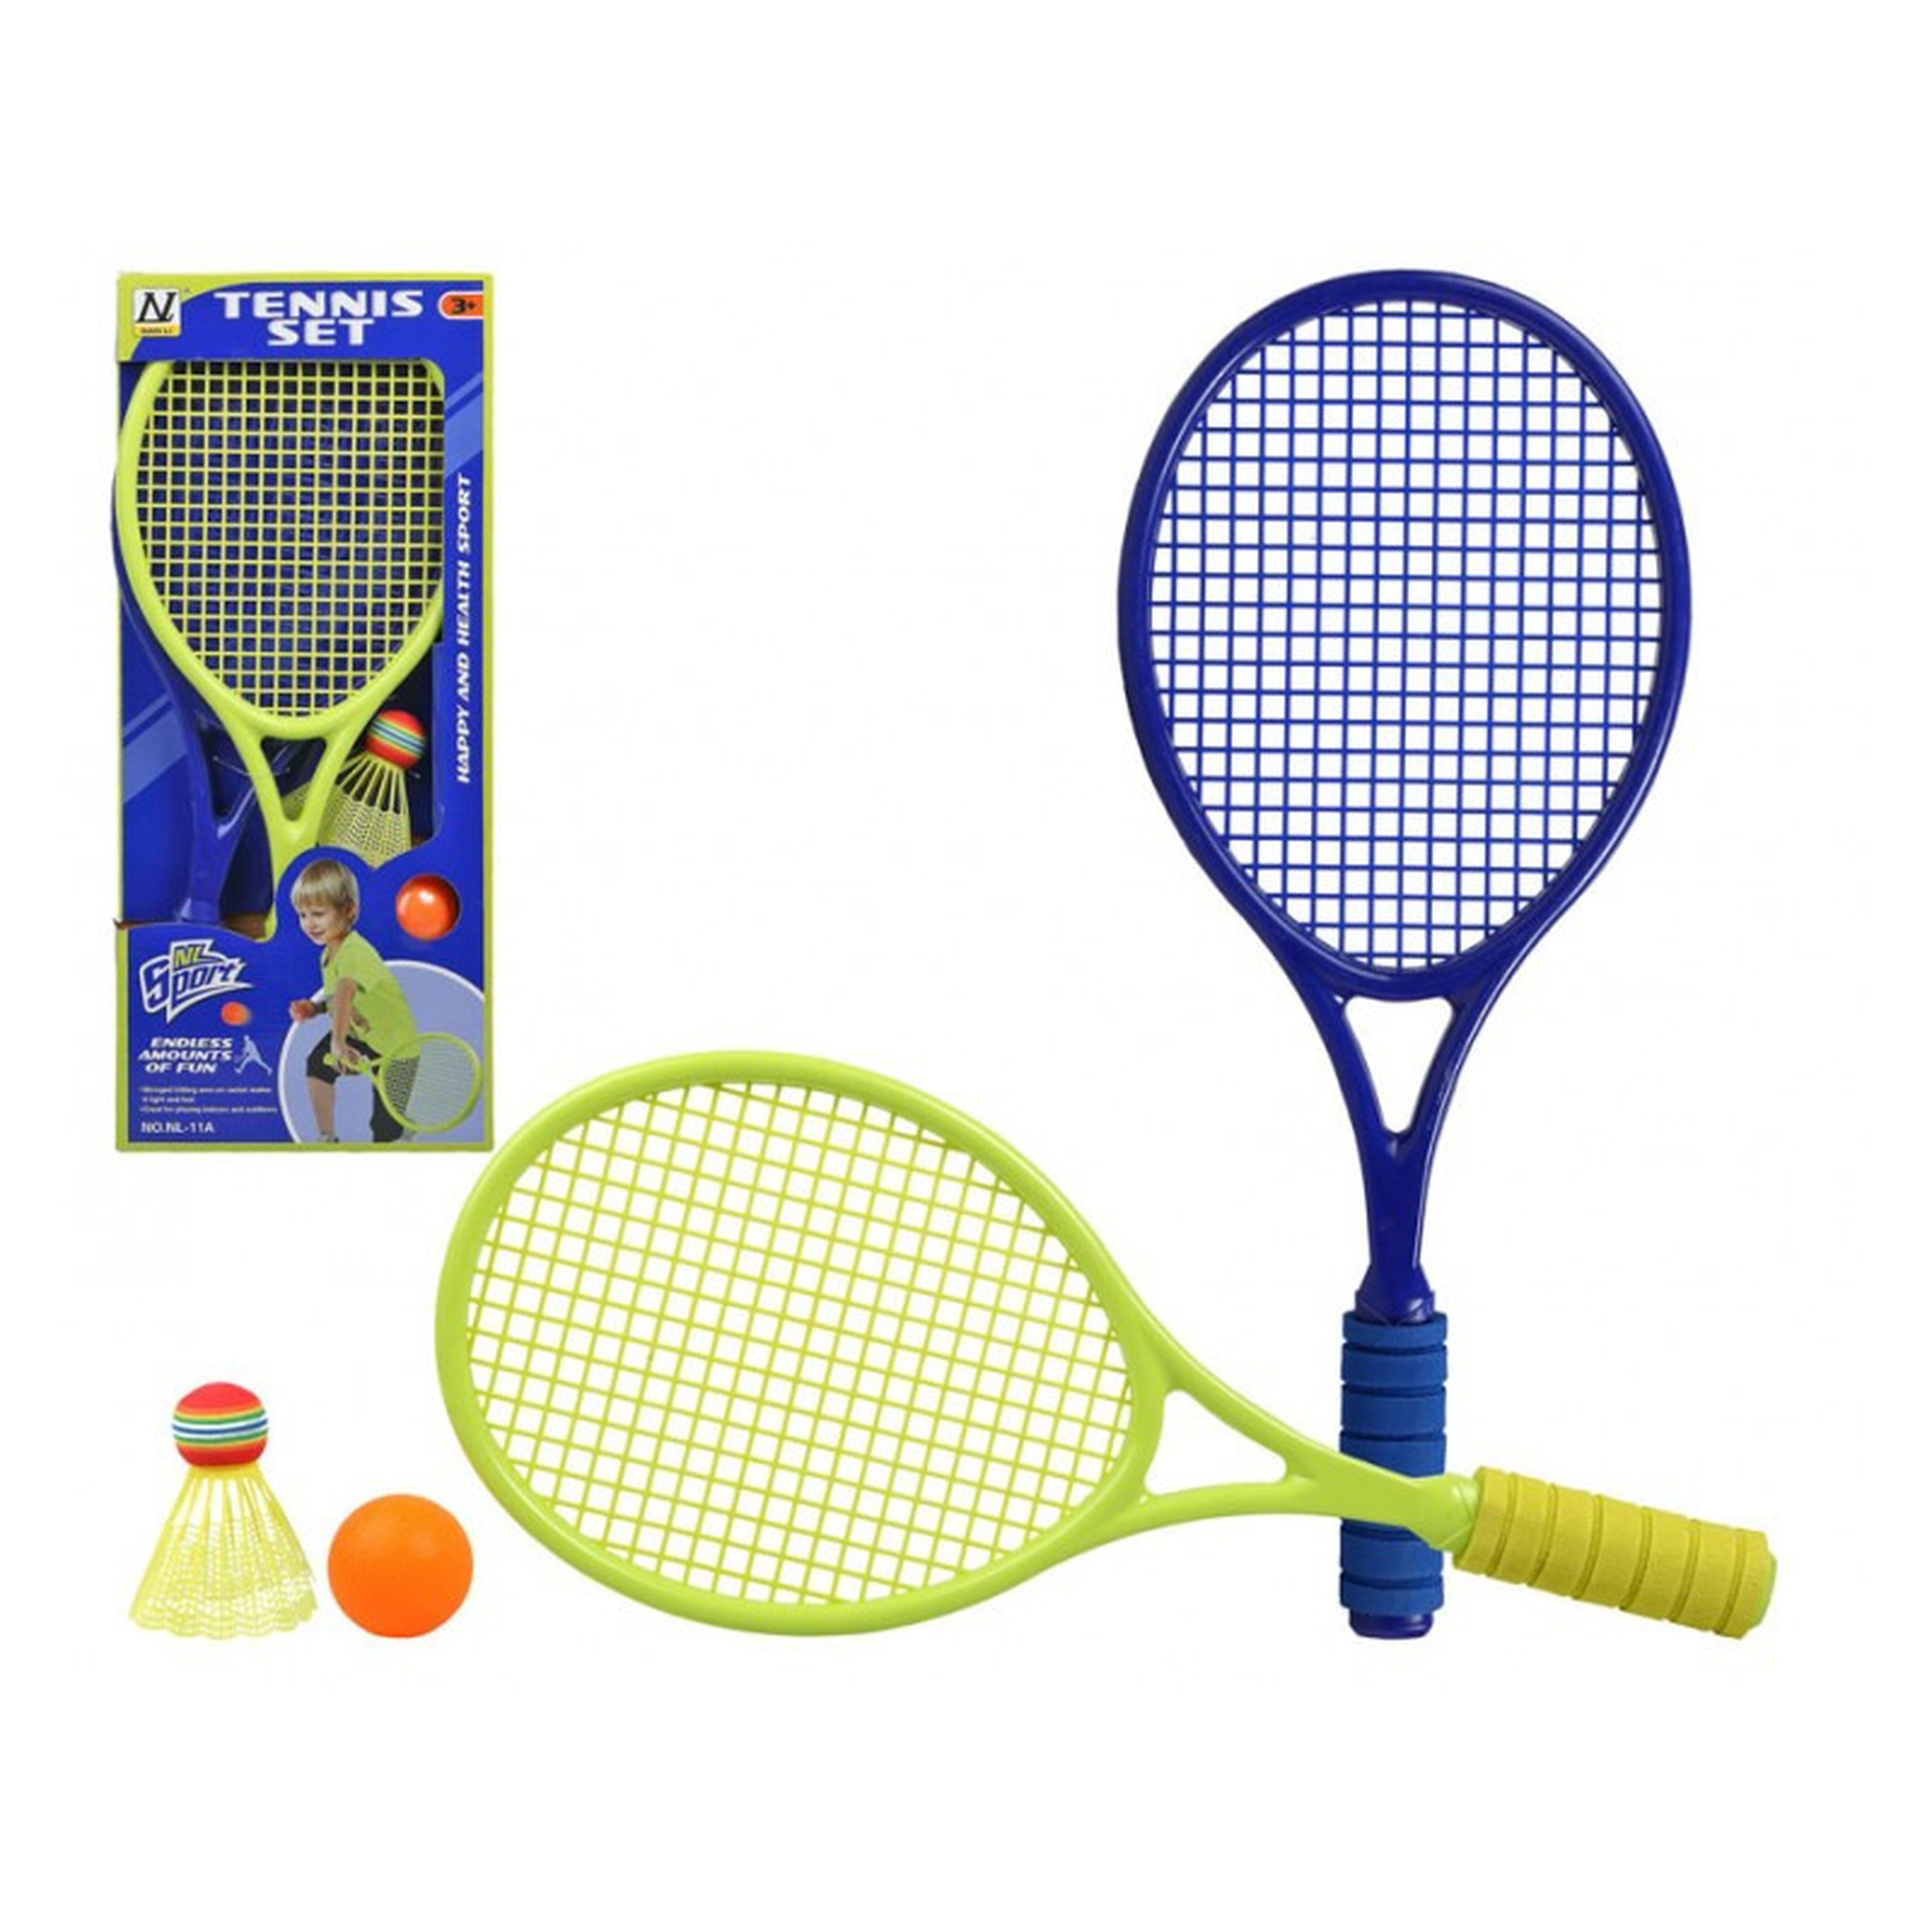 Tennis/badminton set/beachball set blauw/groen met bal en shuttle voor kinderen.